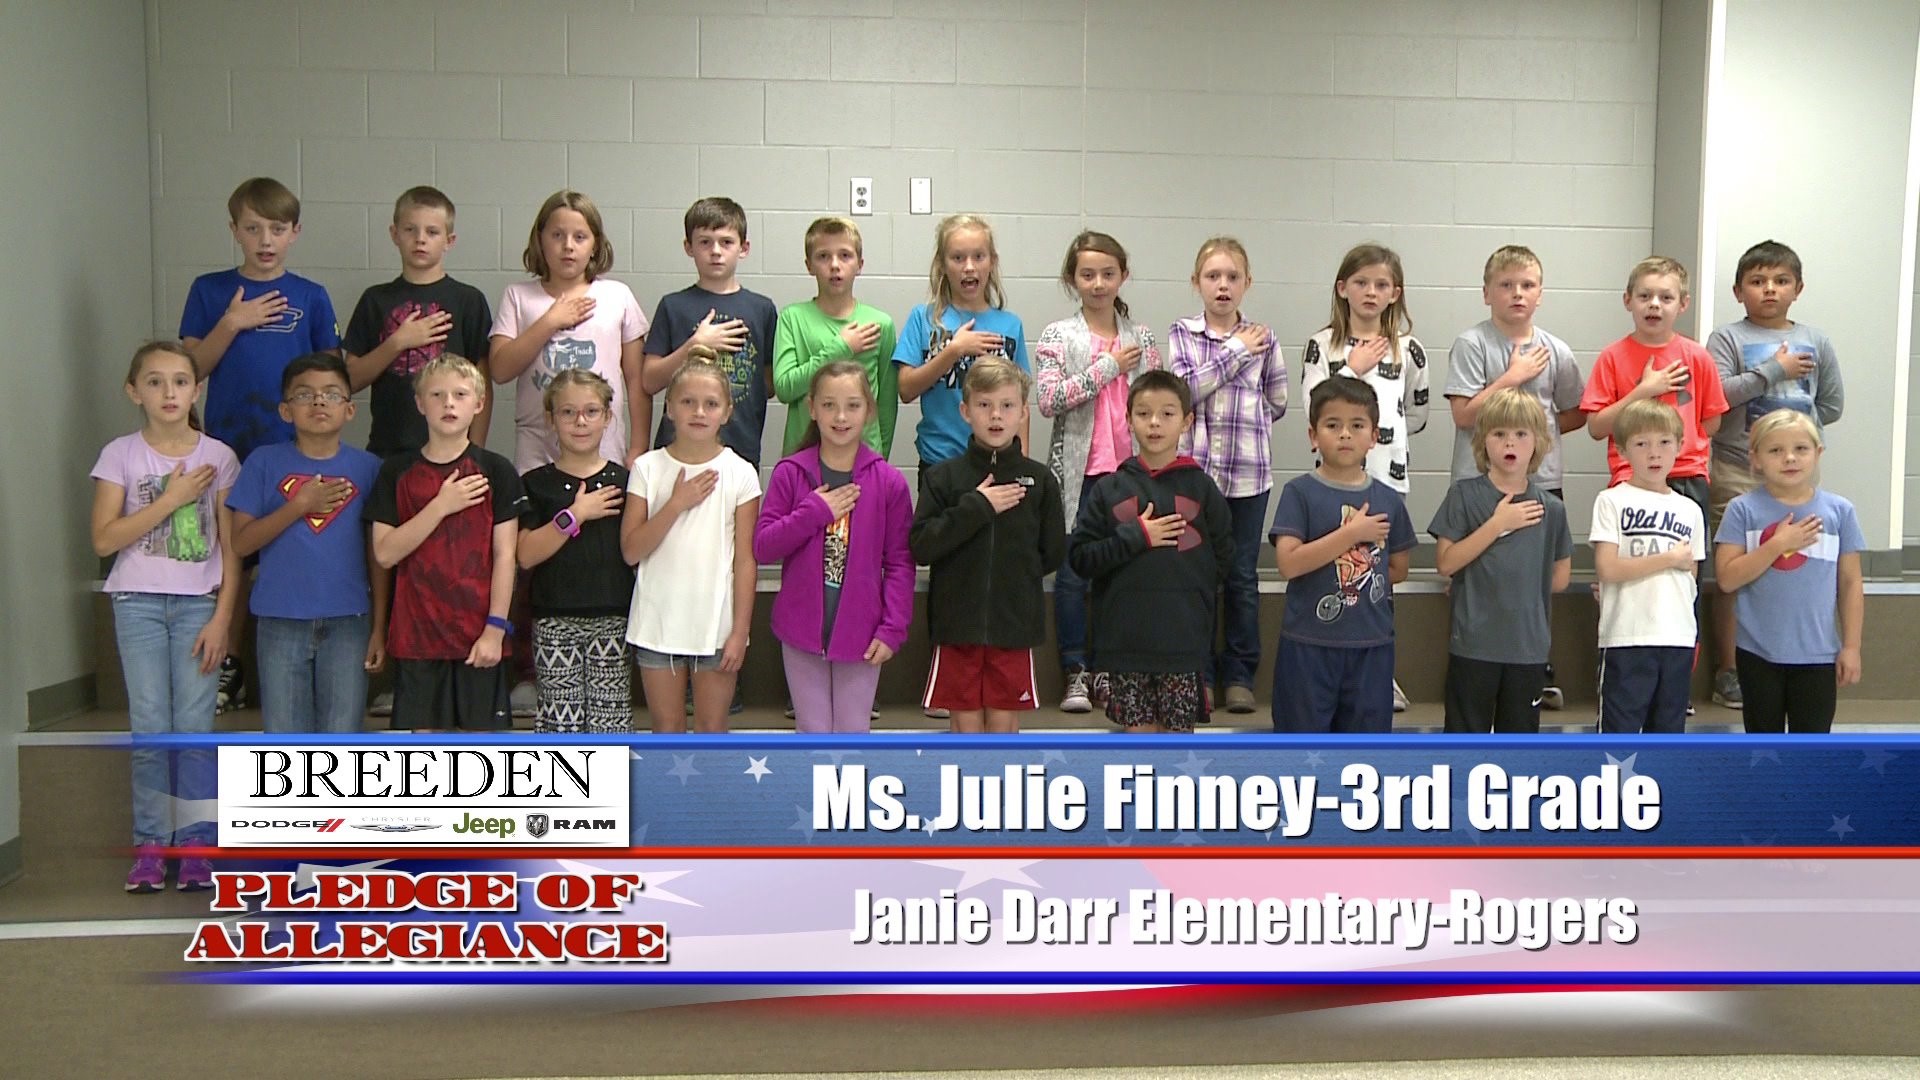 Janie Darr Elementary, Rogers - Ms. Julie Finney - 3rd Grade